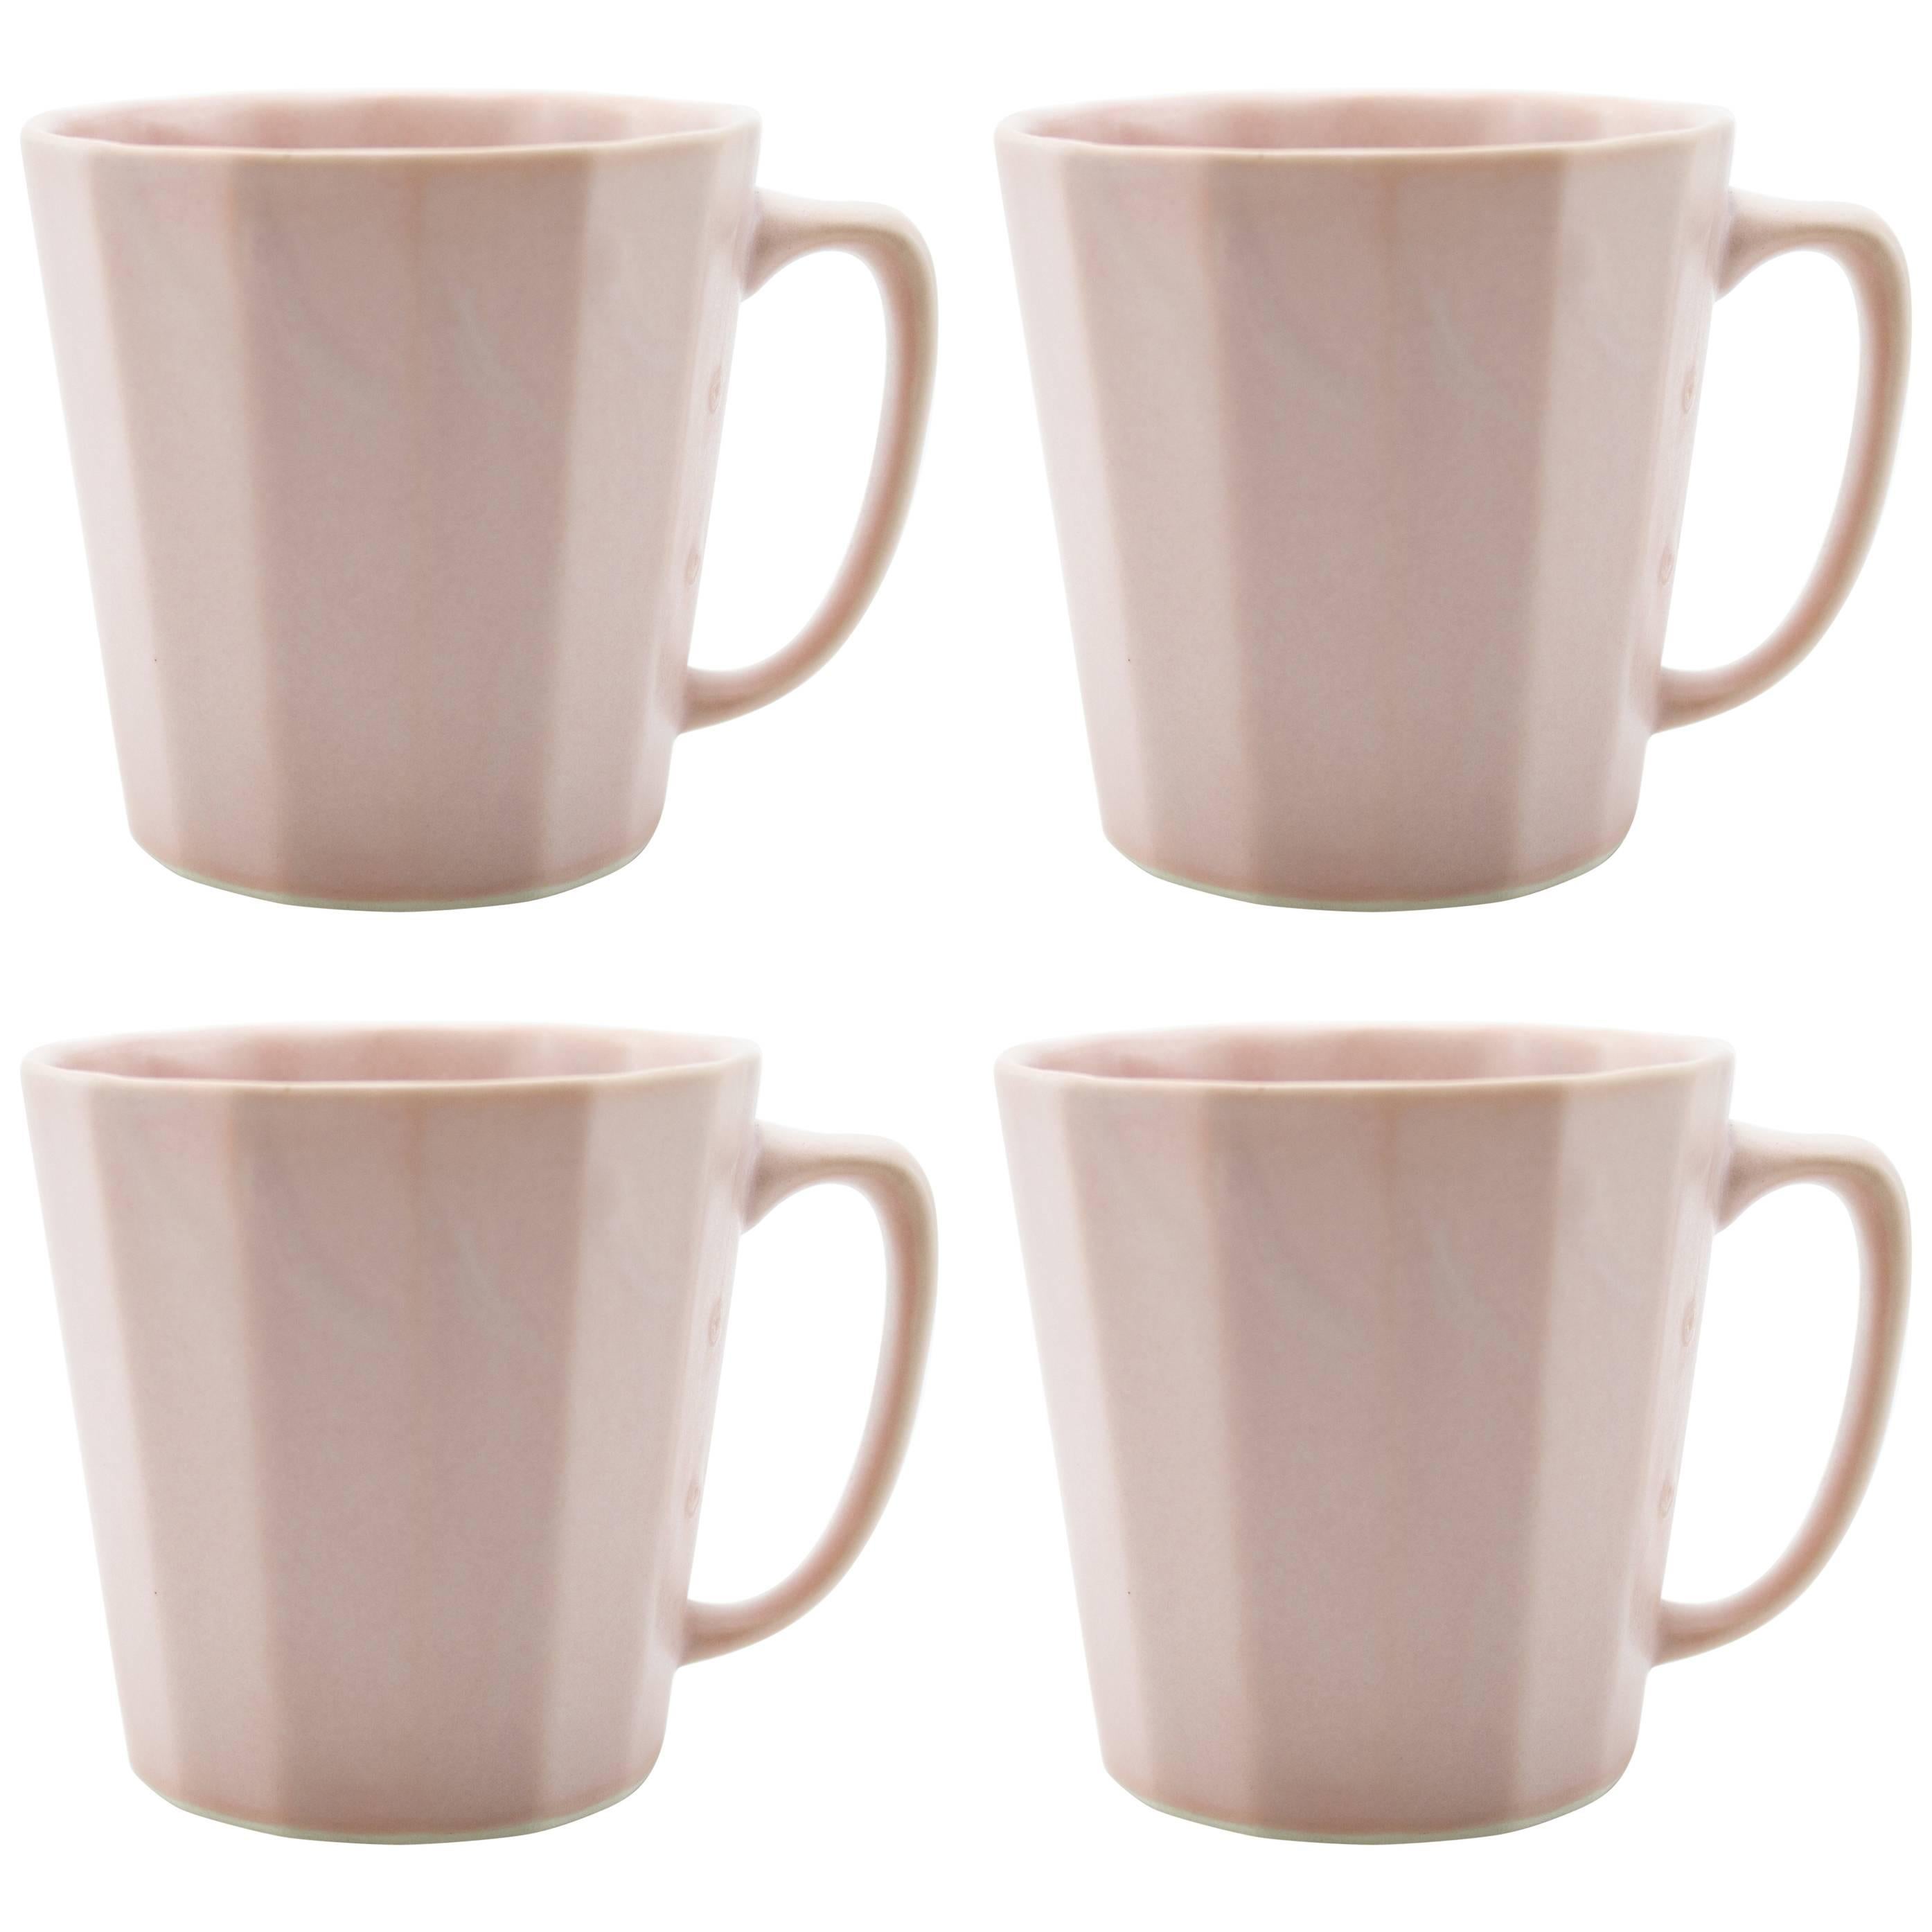 Monday Mug Pink Matte Set of Four Coffee Mug Contemporary Glazed Porcelain